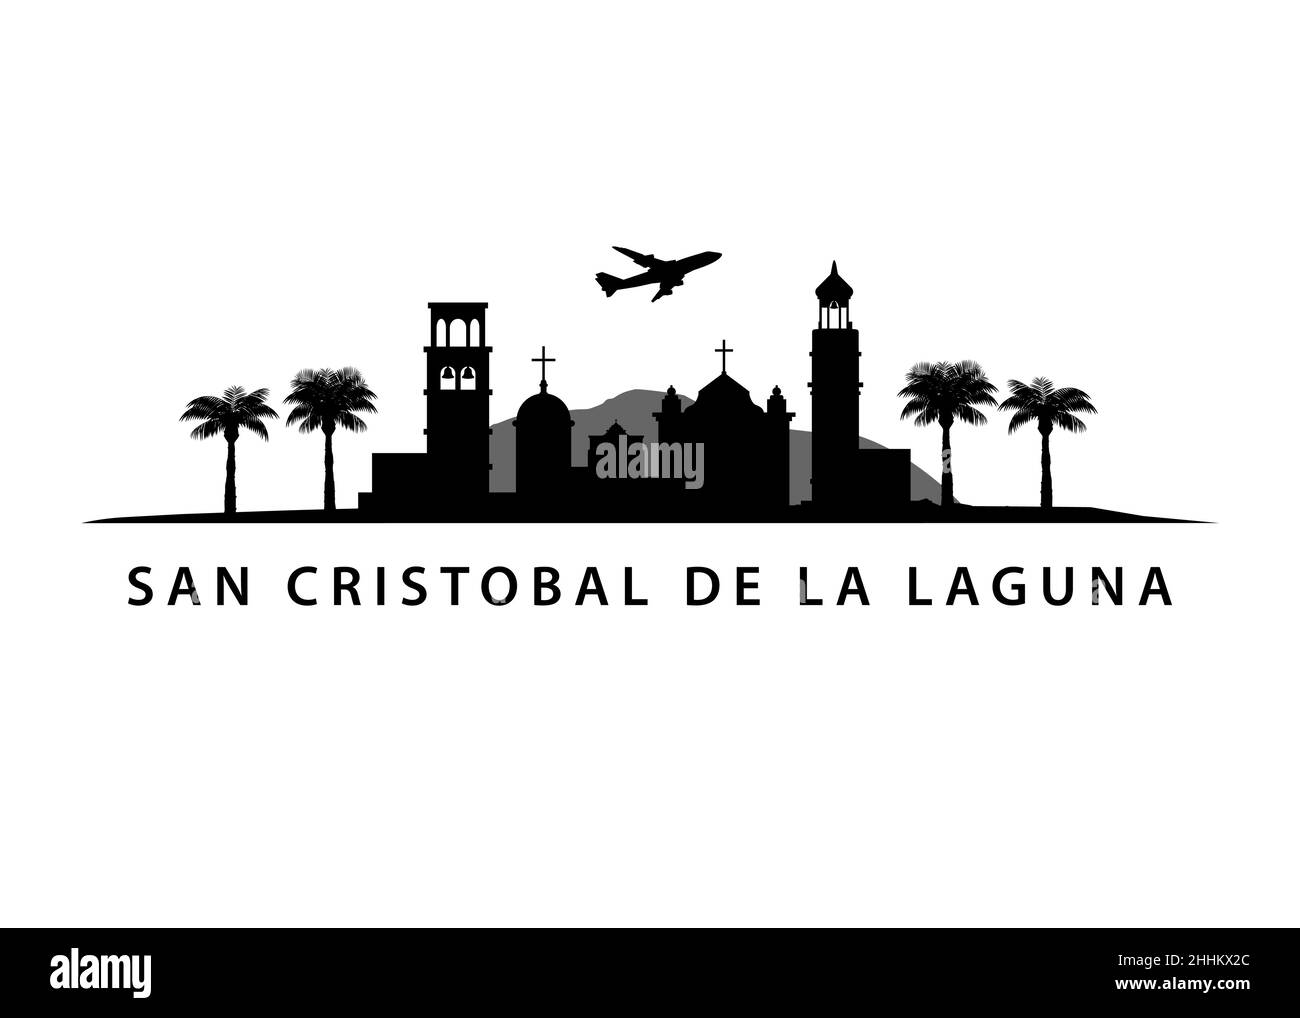 Swan Cristobal de la Laguna CityScape | Tenerife Skyline | ville sur l'île tropicale espagnole Illustration de Vecteur